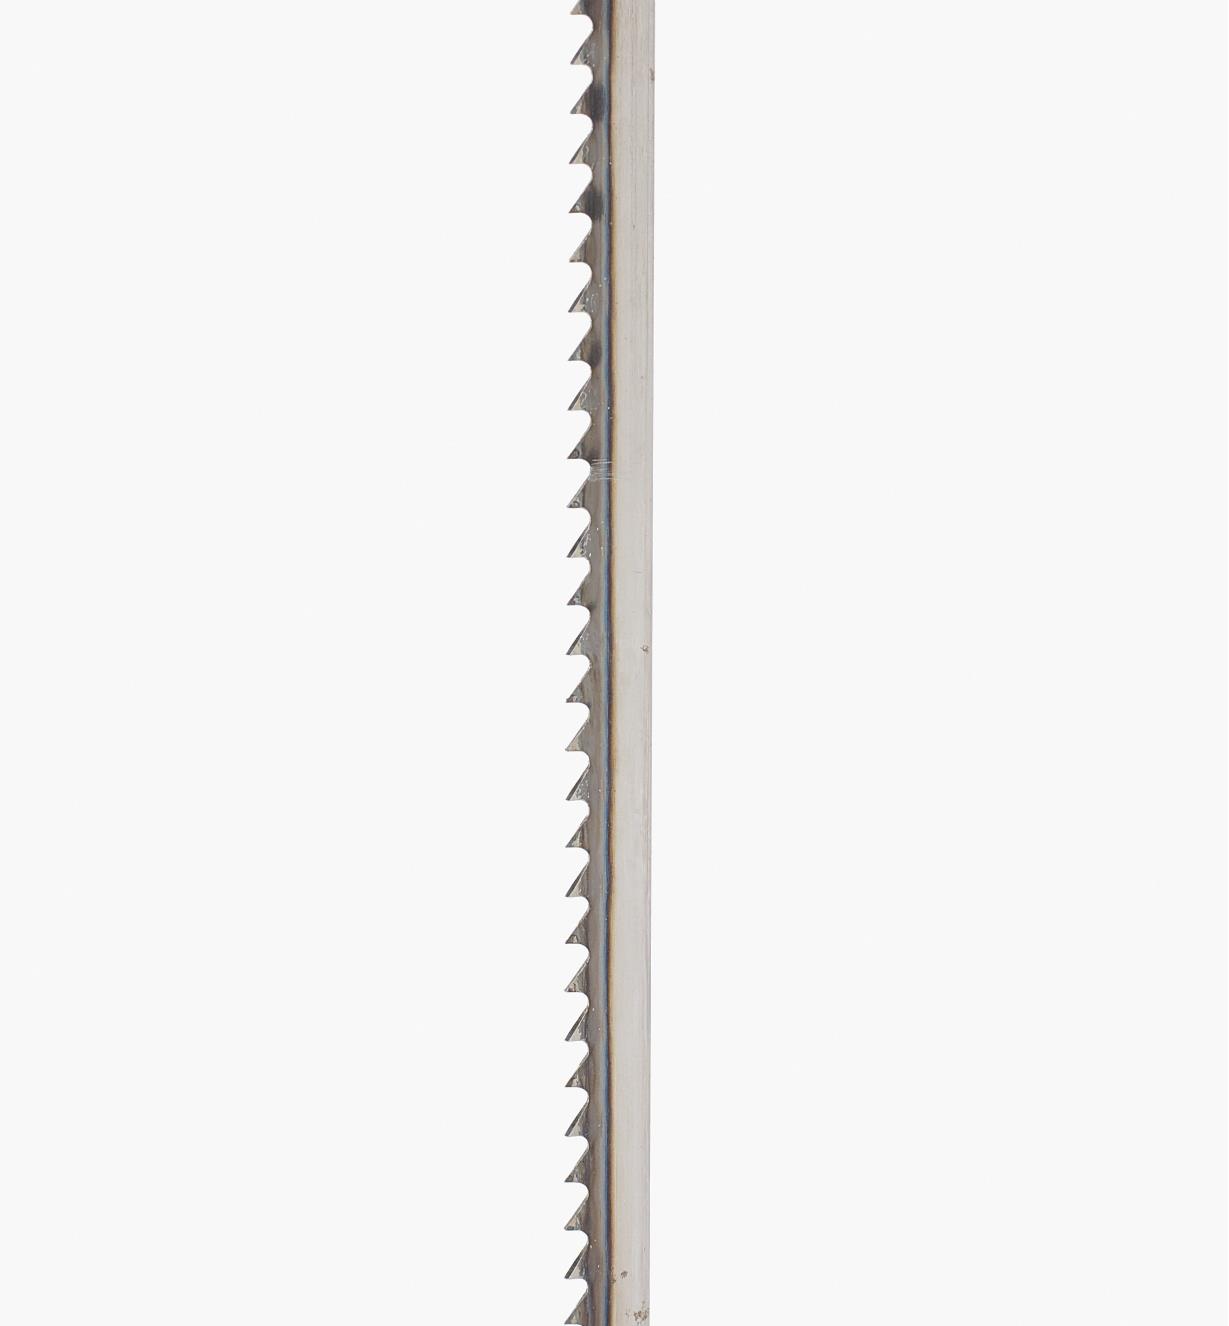 02J0105 - 3/16" × 10tpi Bandsaw Blade